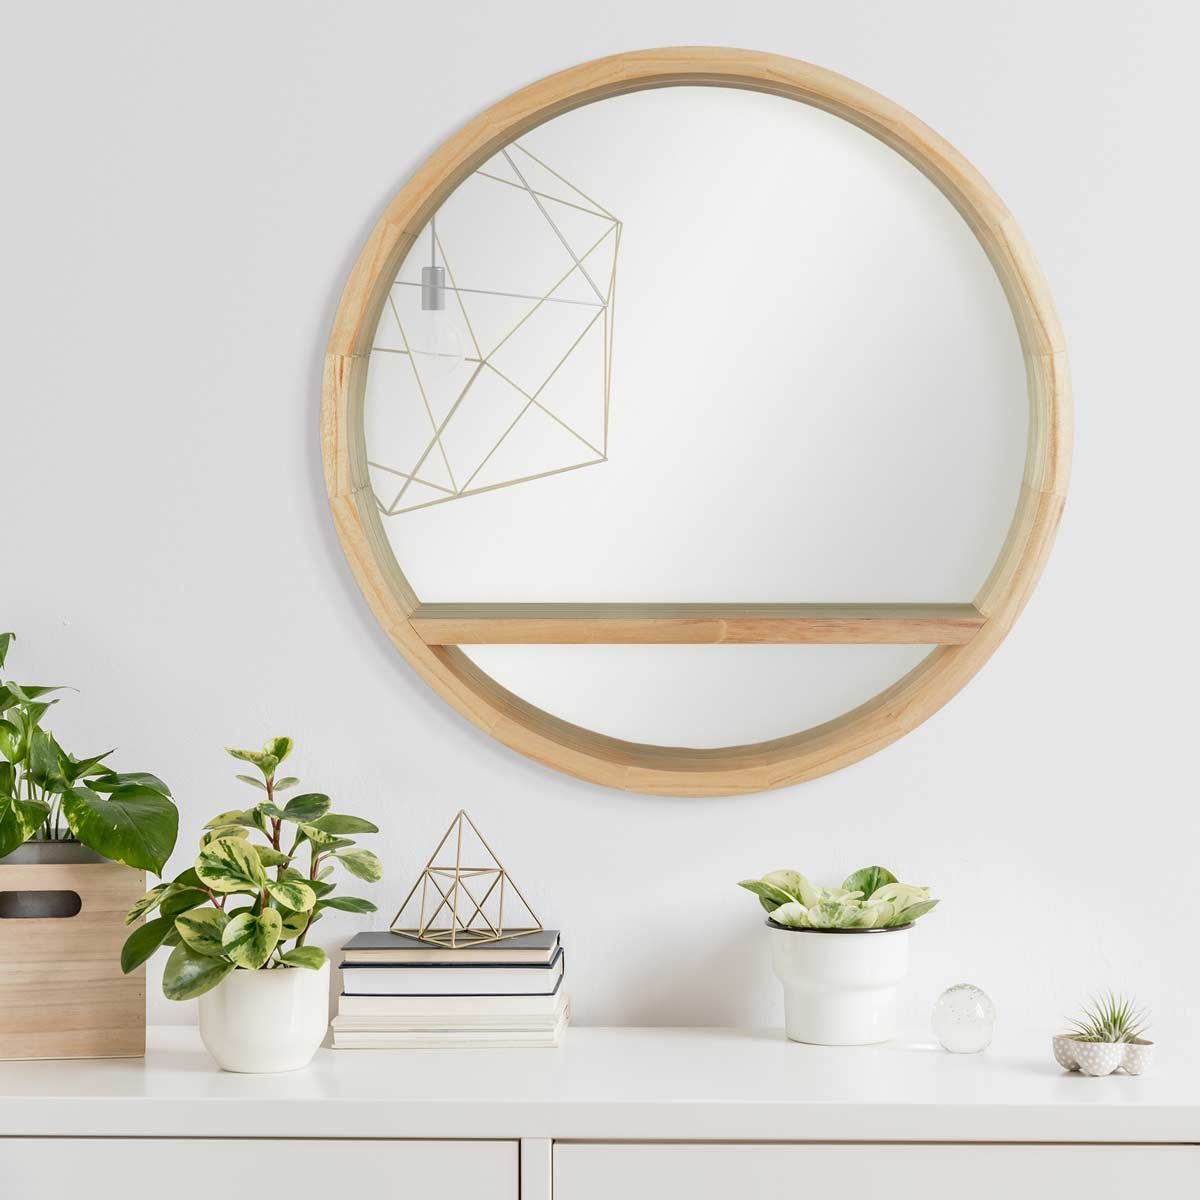 PHOTOLINI Spiegel mit Holzrahmen praktischer Ablagefläche, und Naturholz Wandspiegel